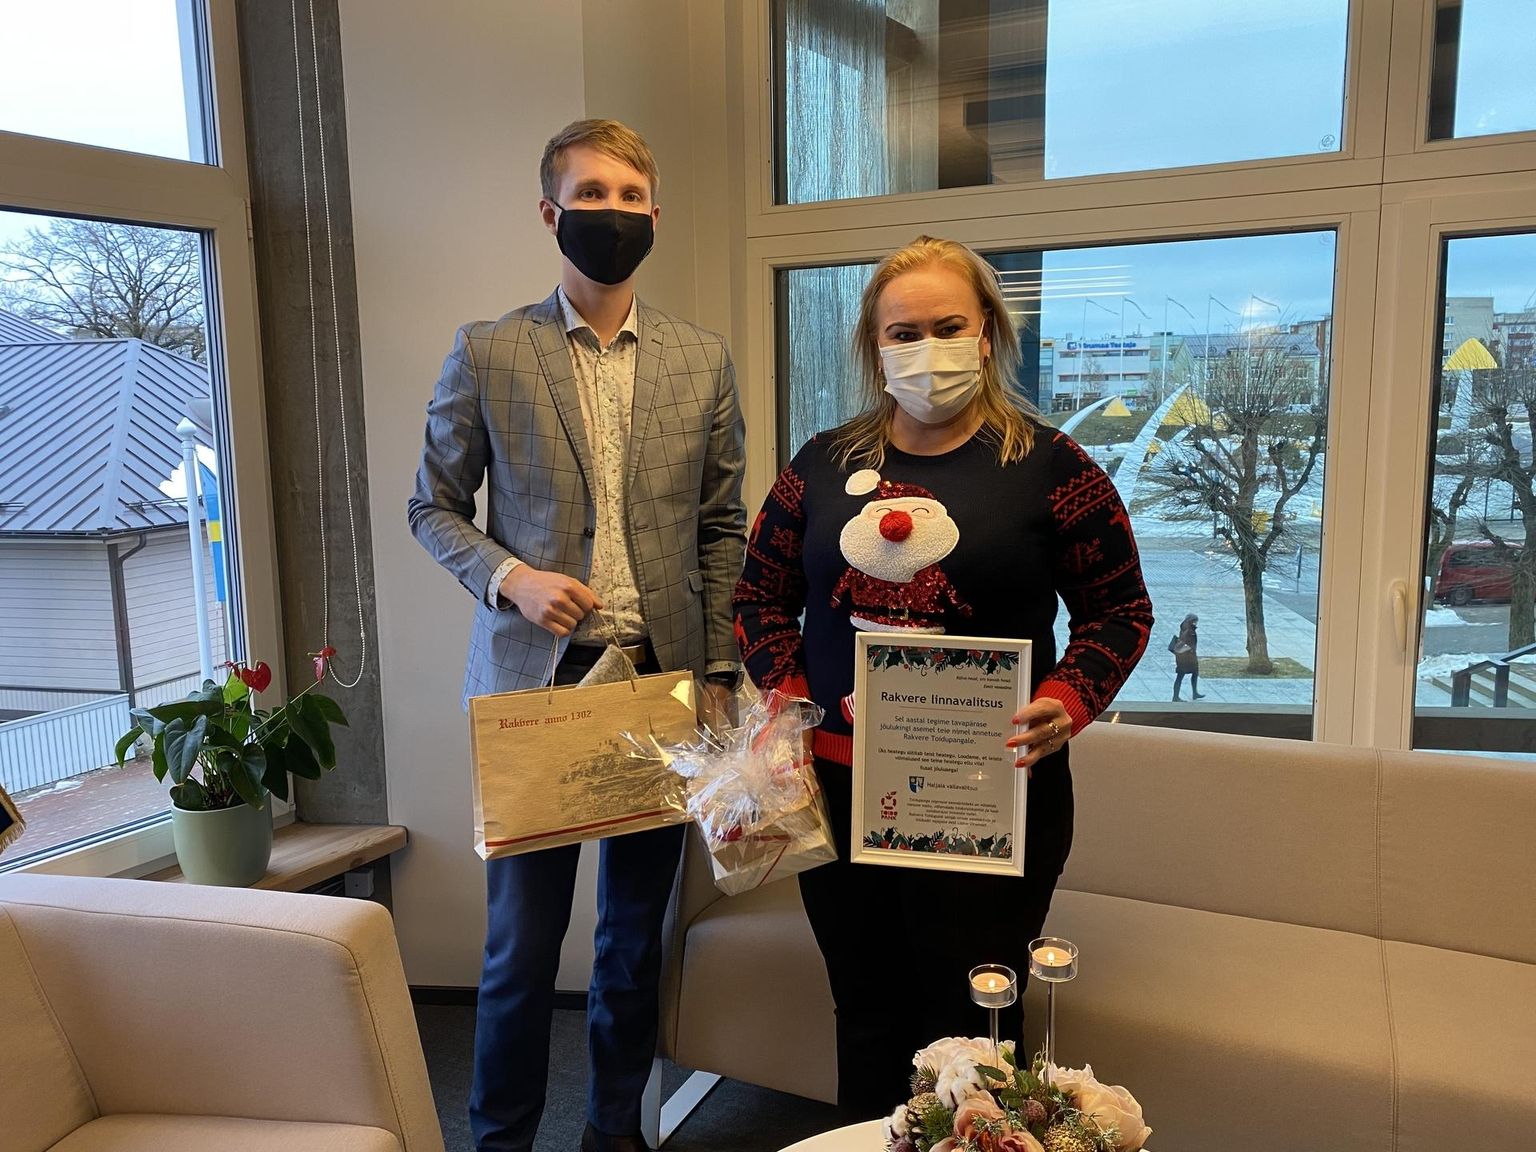 Haljala vald tegi tänavu naabervaldadele jõulukingituseks selle, et annetas kingituste raha toidupangale. Fotol Haljala vallavanem Ivar Lilleberg Rakvere linnapea Triin Varekuga.